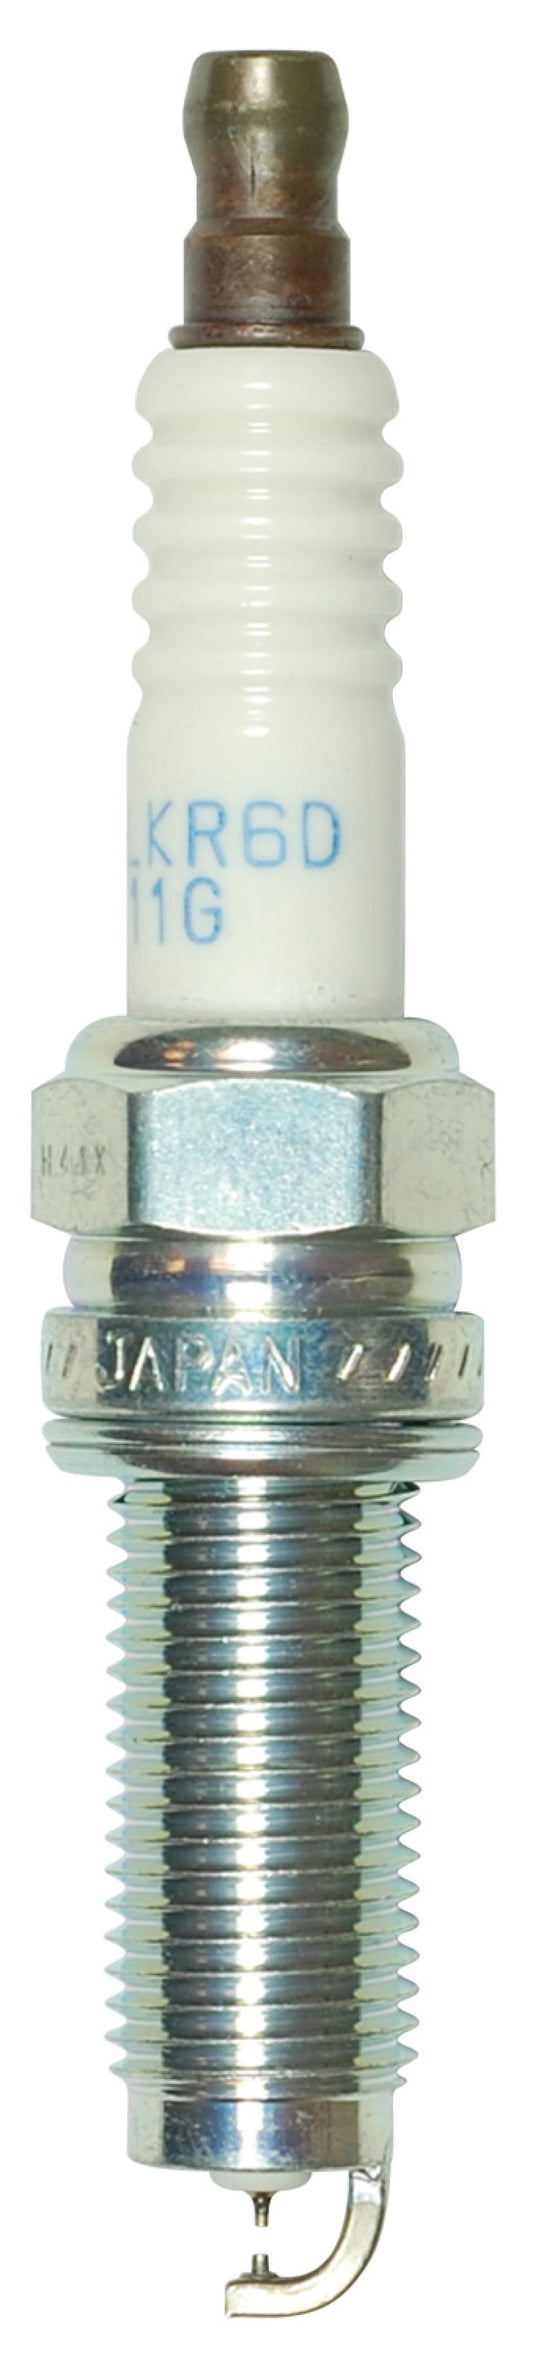 NGK Laser Iridium Spark Plug Box of 4 (DILKR6D11G)